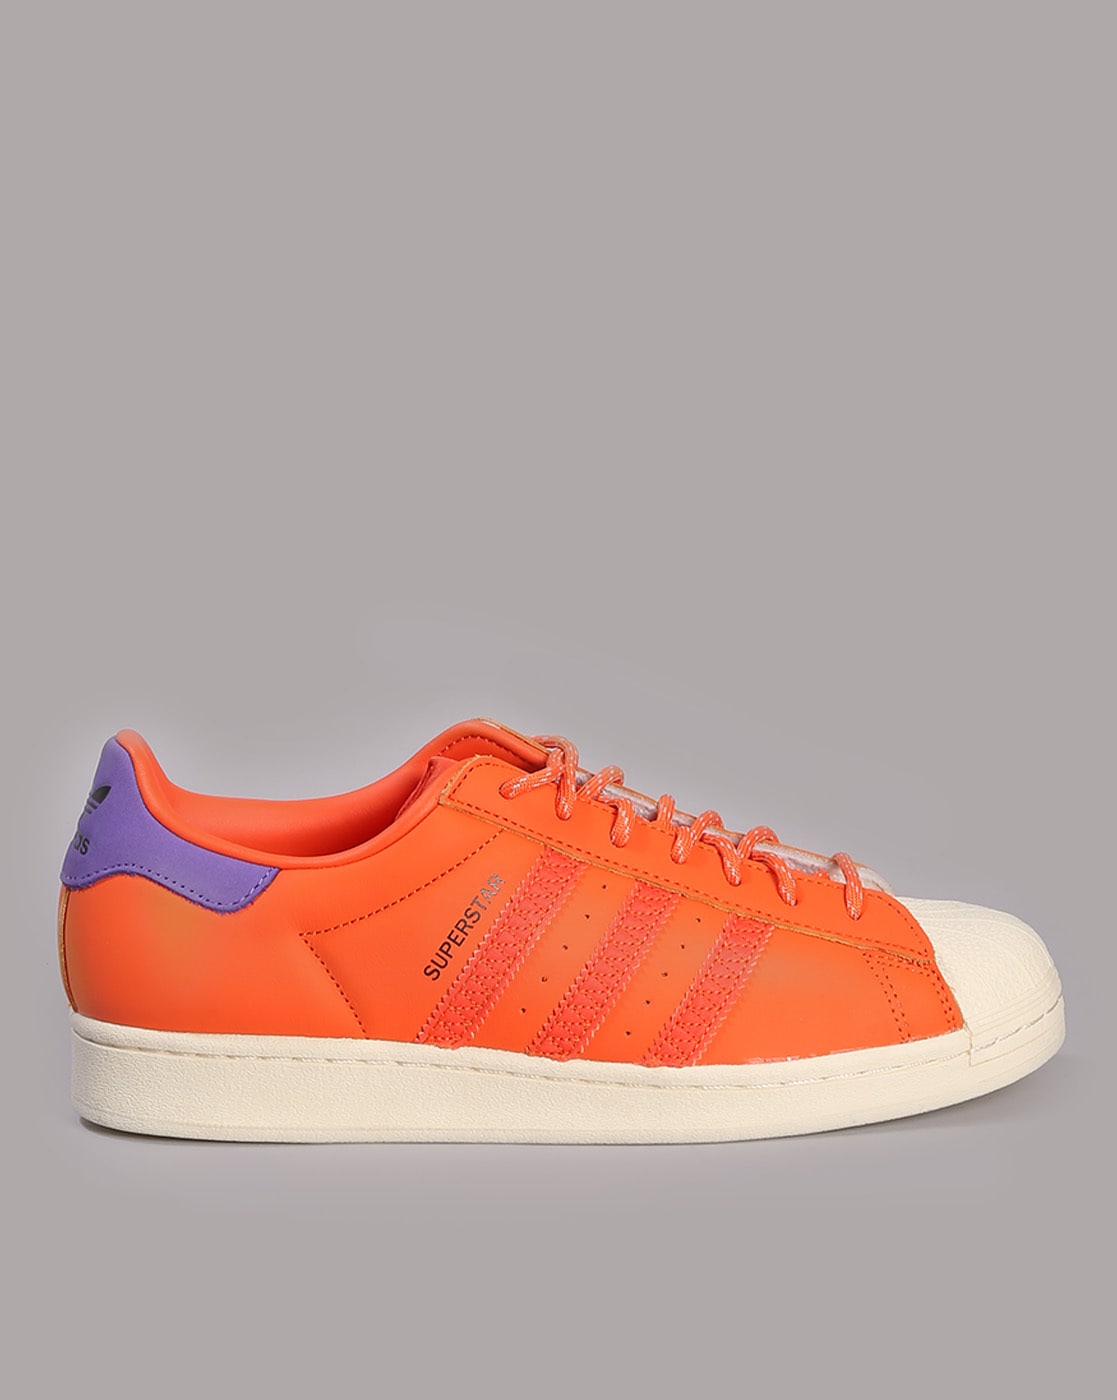 adidas Originals sneakers Gazelle Indoor HQ9016 orange color buy on PRM